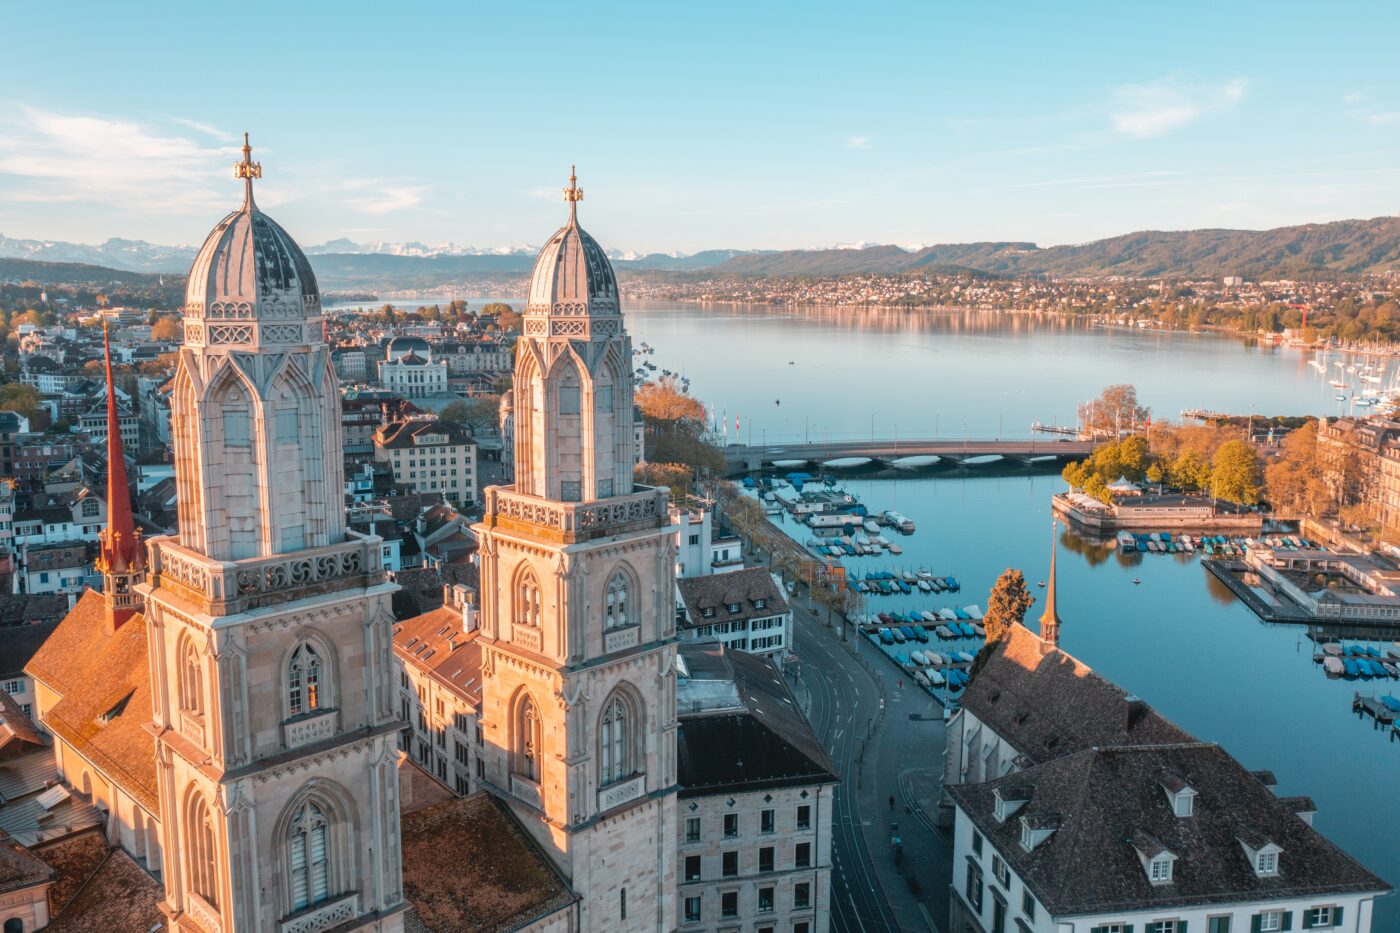 Blick über die Stadt Zürich mit dem Grossmünster links im Vordergrund und Ausblick auf den Zürichsee im Hintergrund.